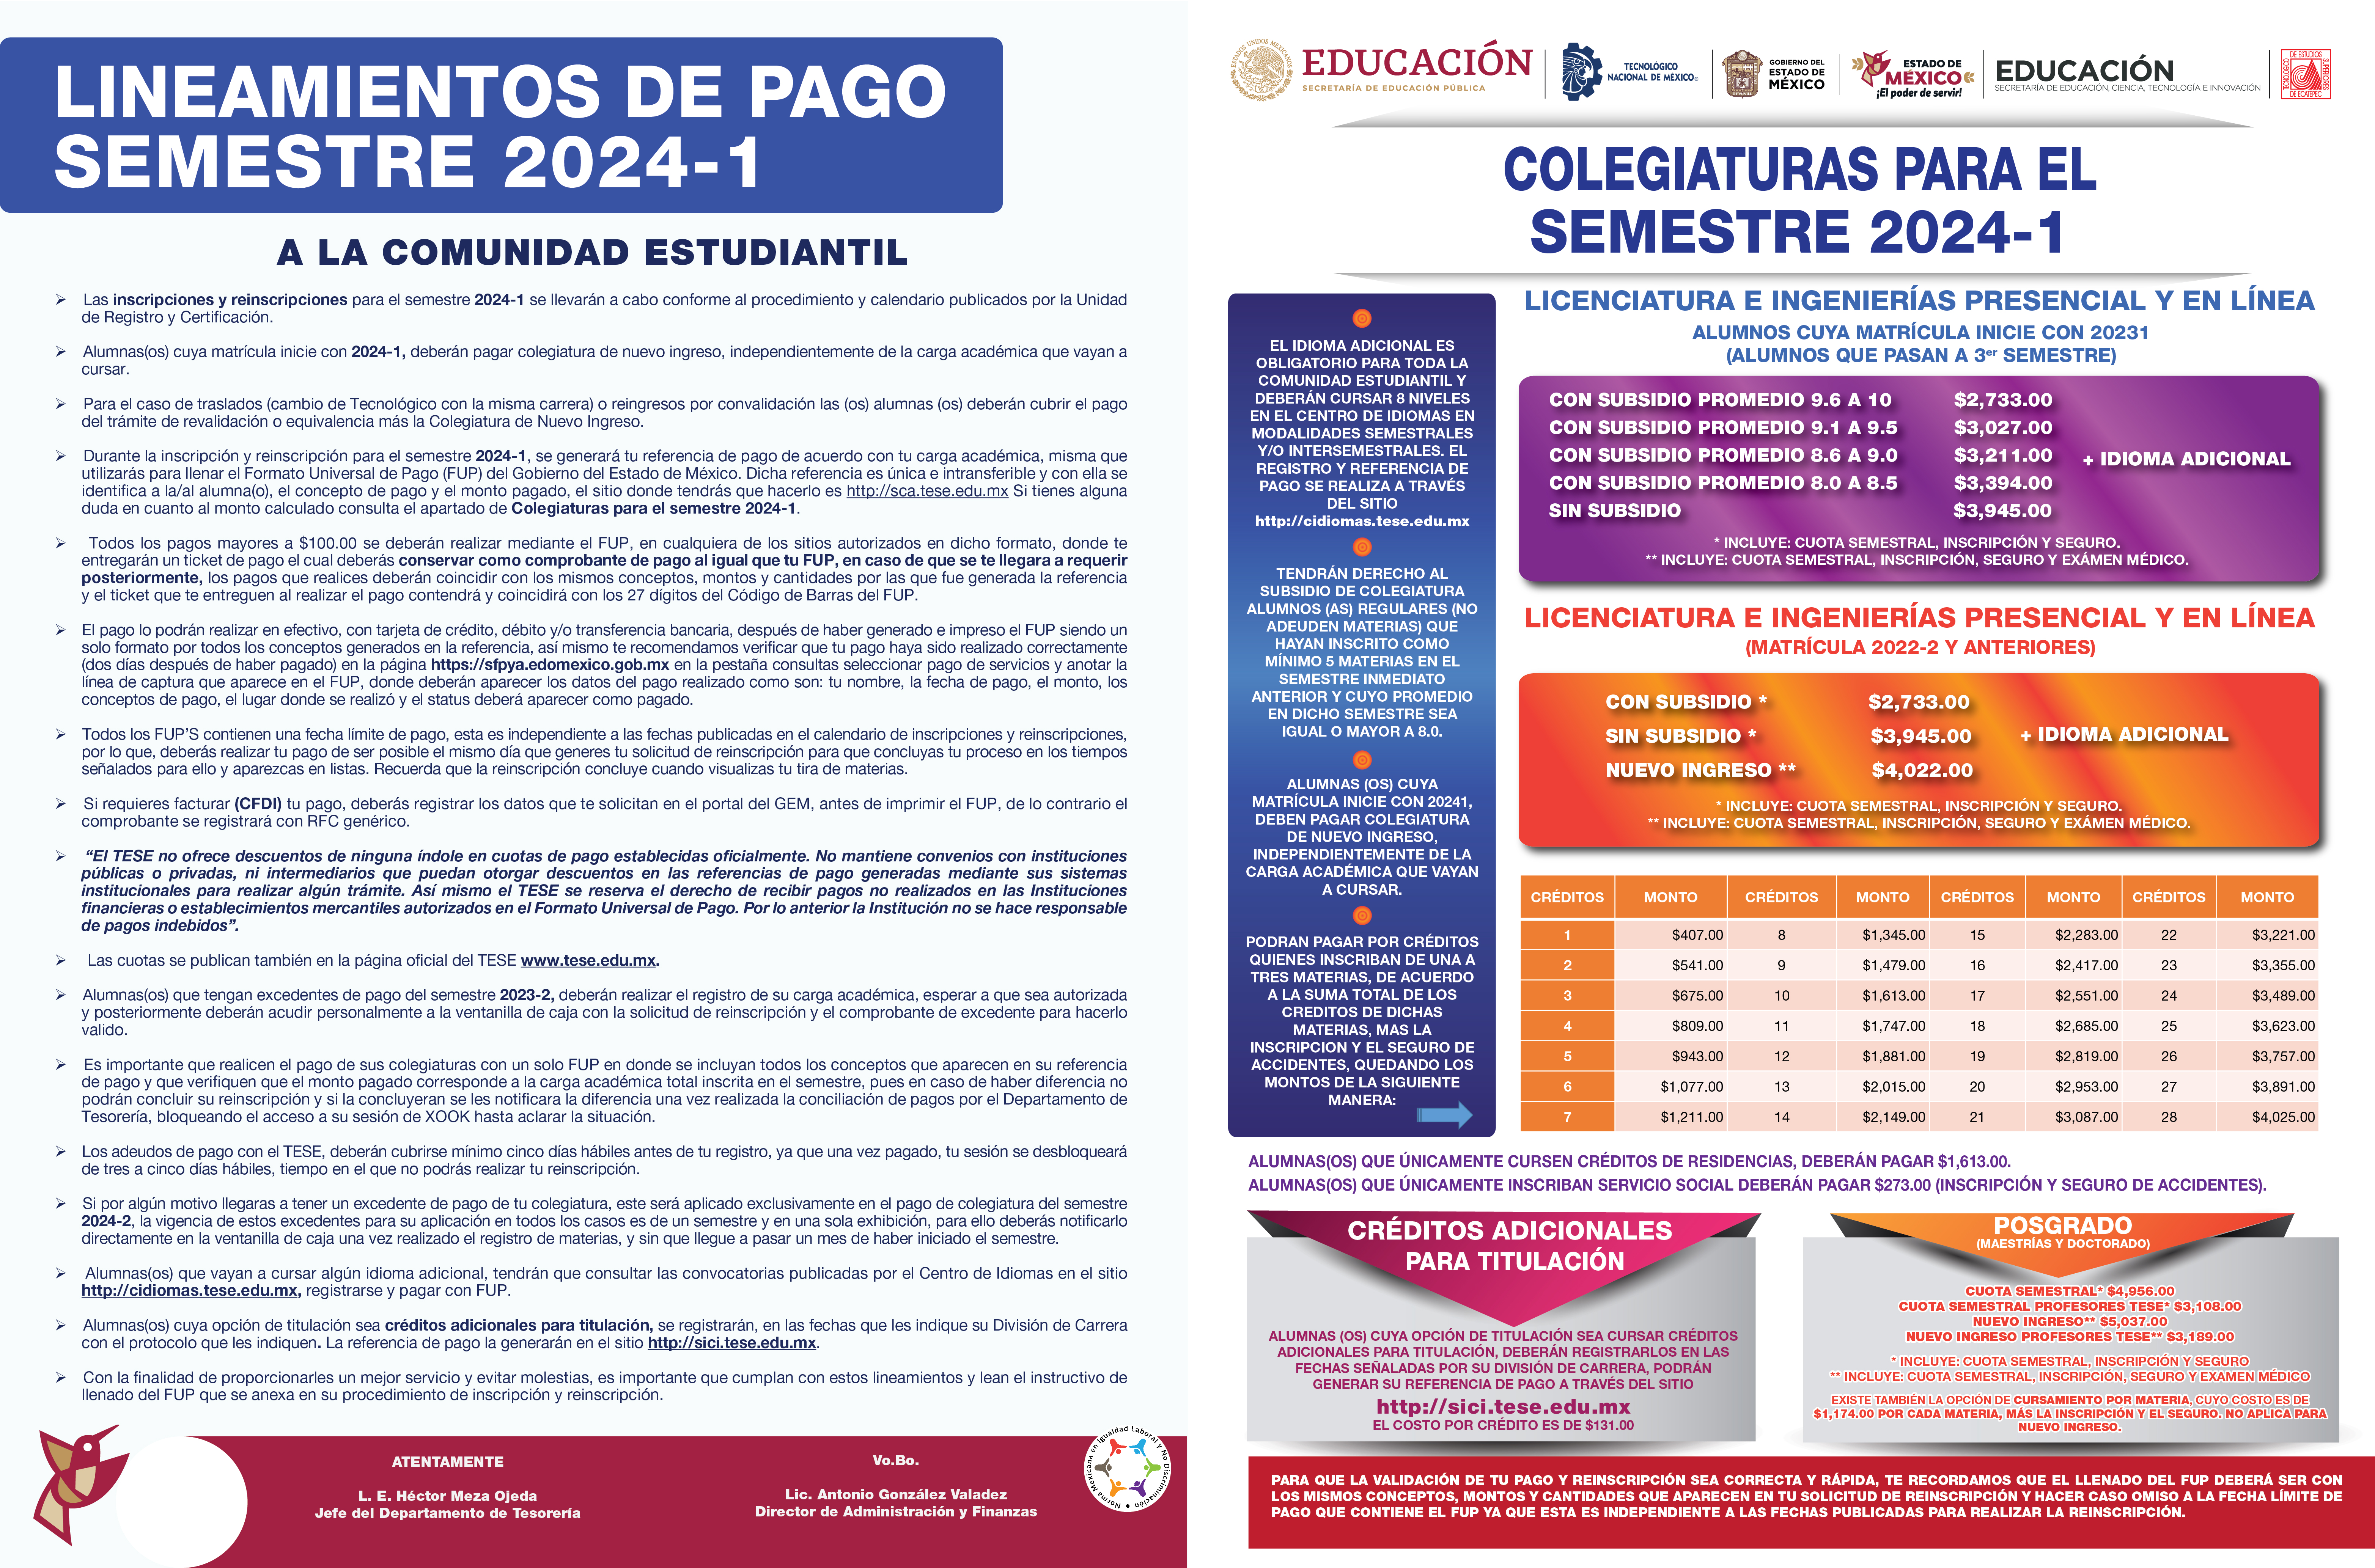 LINEAMIENTOS DE PAGO Y CUOTAS PARA EL SEMESTRE 2024-1